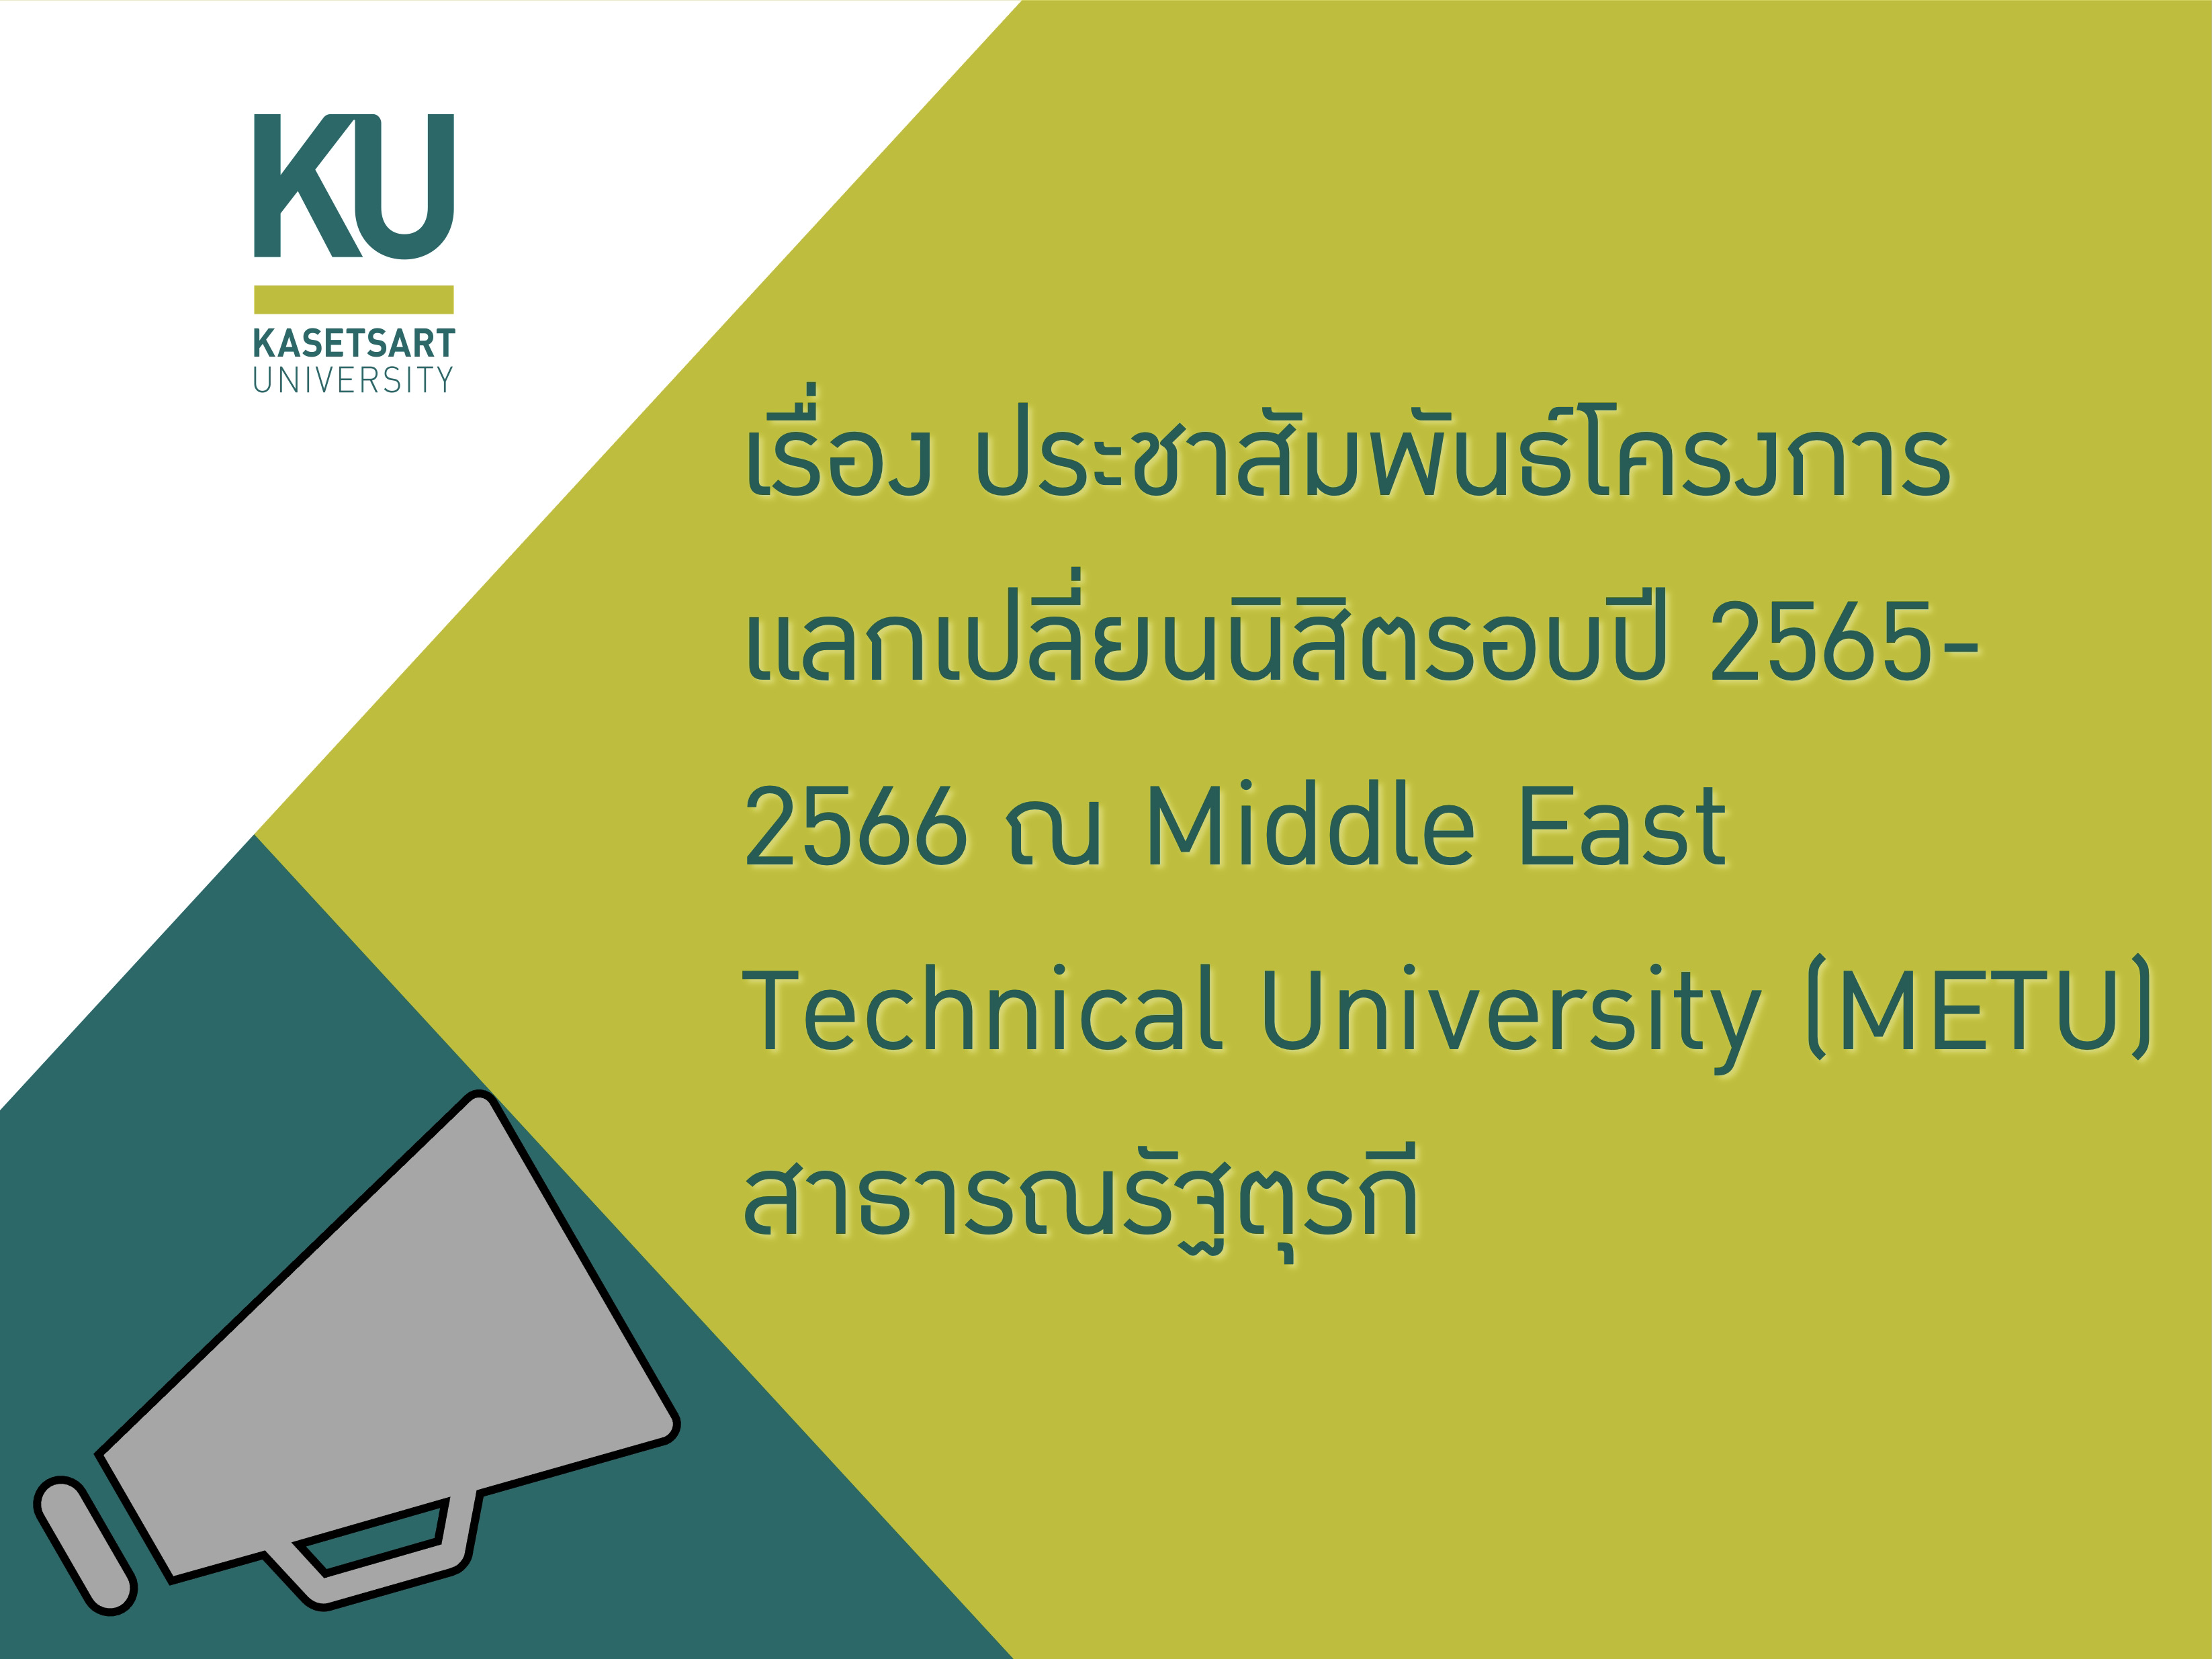 ประชาสัมพันธ์โครงการแลกเปลี่ยนนิสิตรอบปี 2565-2566 ณ Middle East Technical University (METU) สาธารณรัฐตุรกี